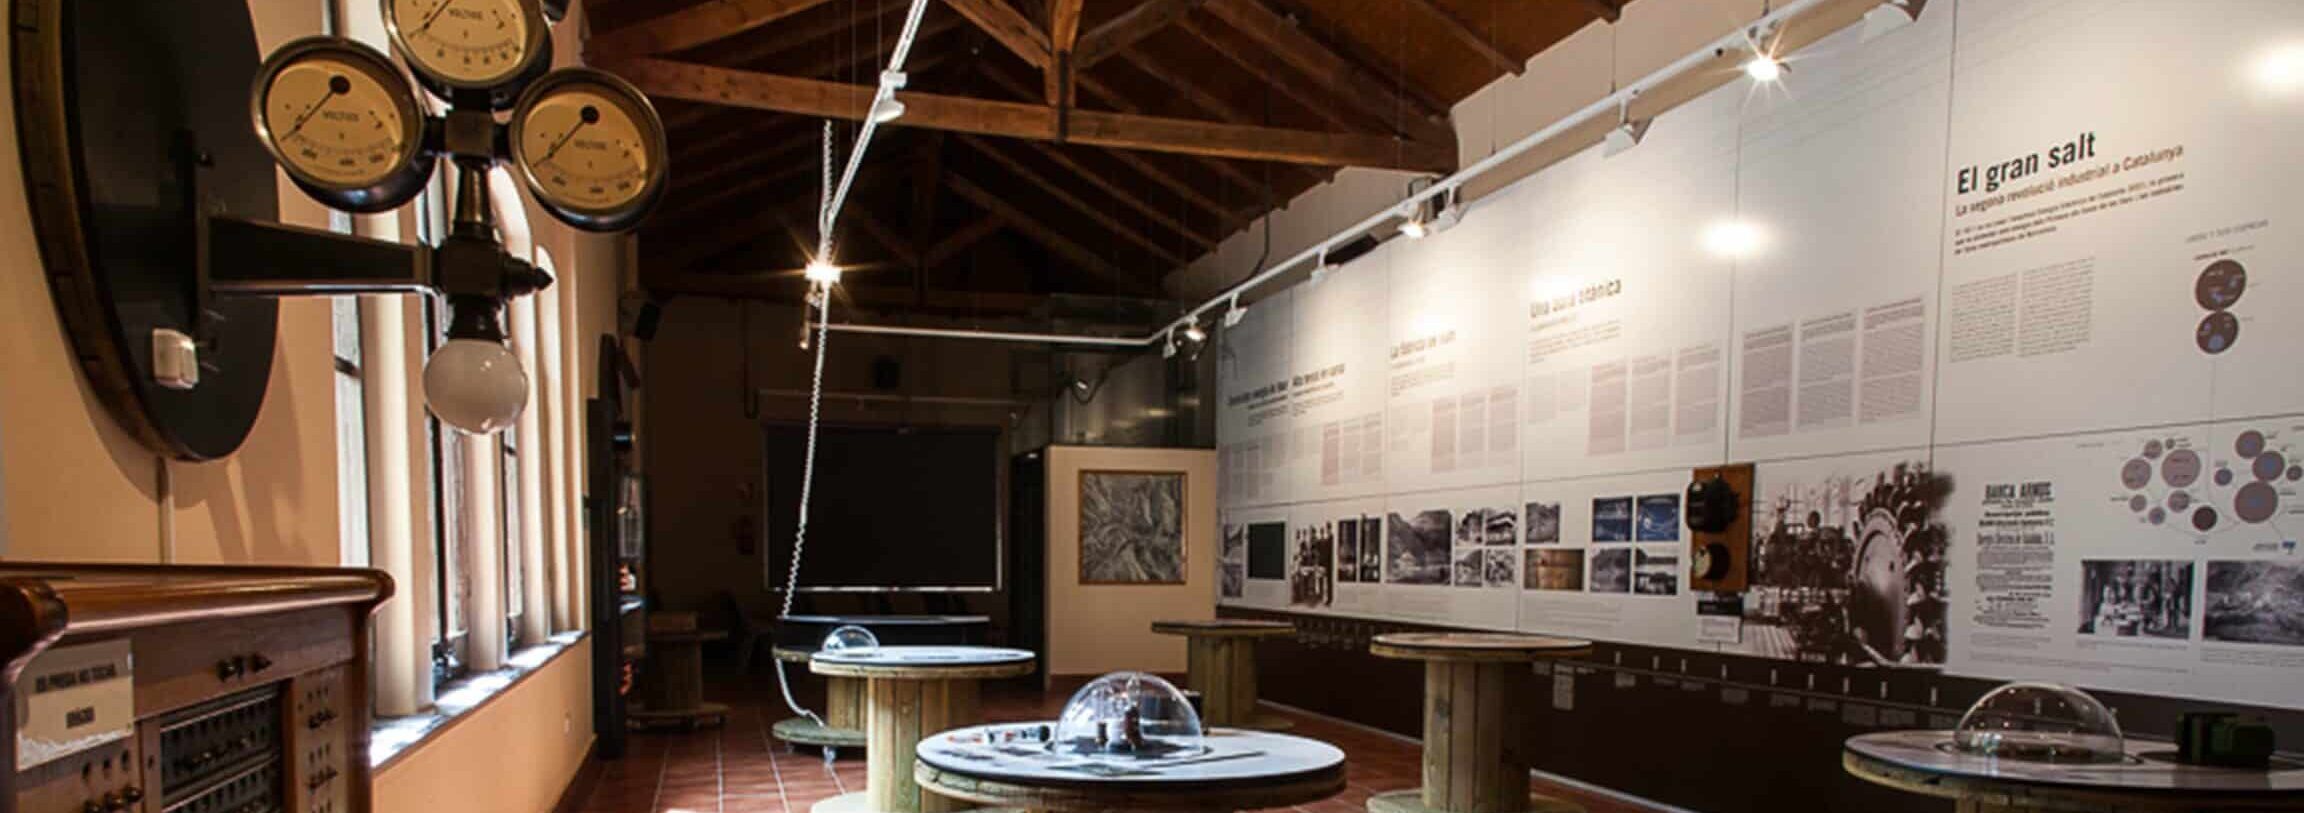 MUSEU HIDROELÈCTRIC DE CAPDELLA		Torre de Cabdella (La)	Lleida	Museo